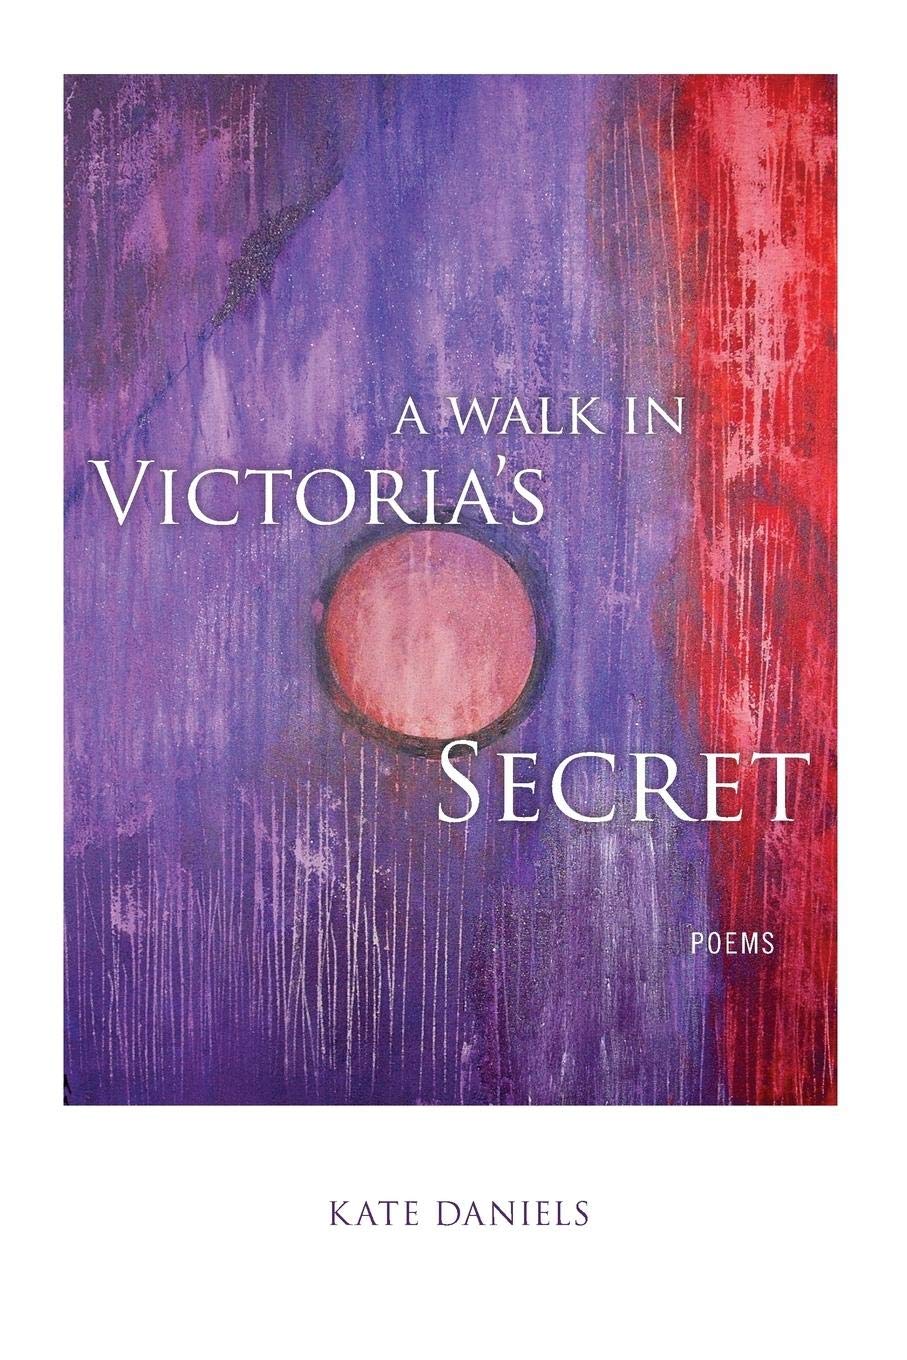 Book Cover of Kate Daniels A Walk in Victorias's Secret